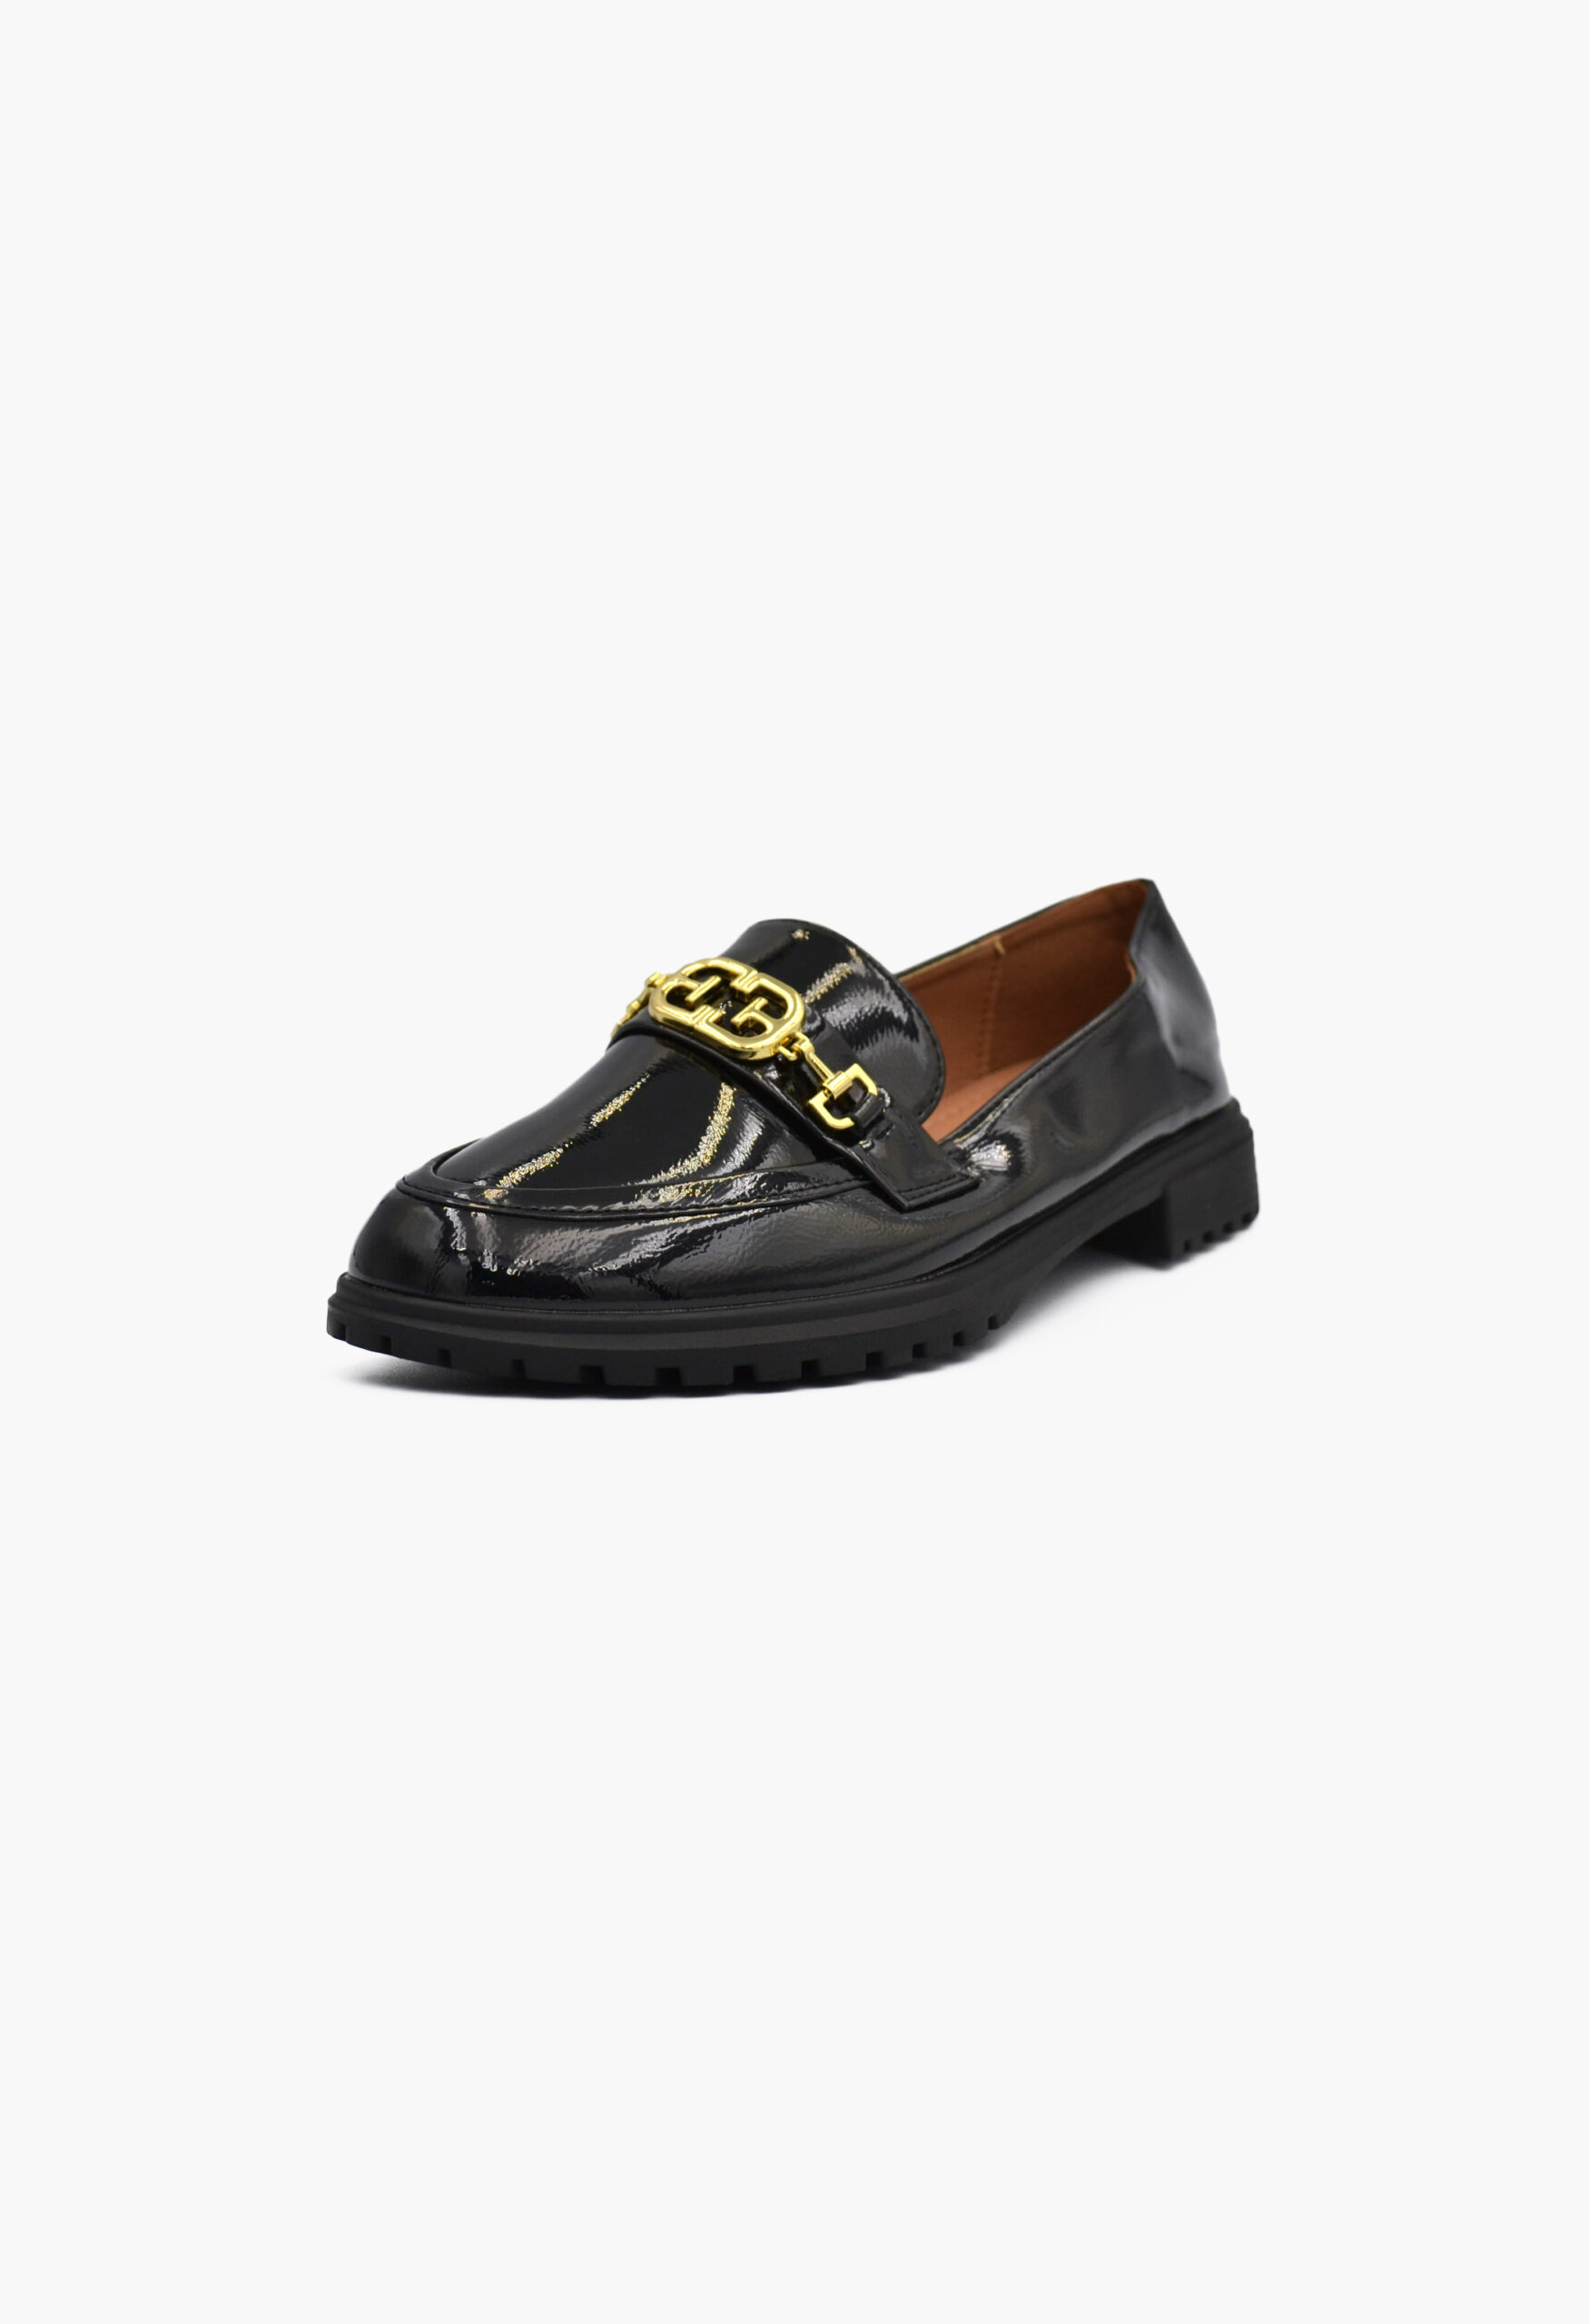 Γυναικεία Loafers σε Μαύρο Χρώμα / W-228-black Χαμηλά Παπούτσια joya.gr